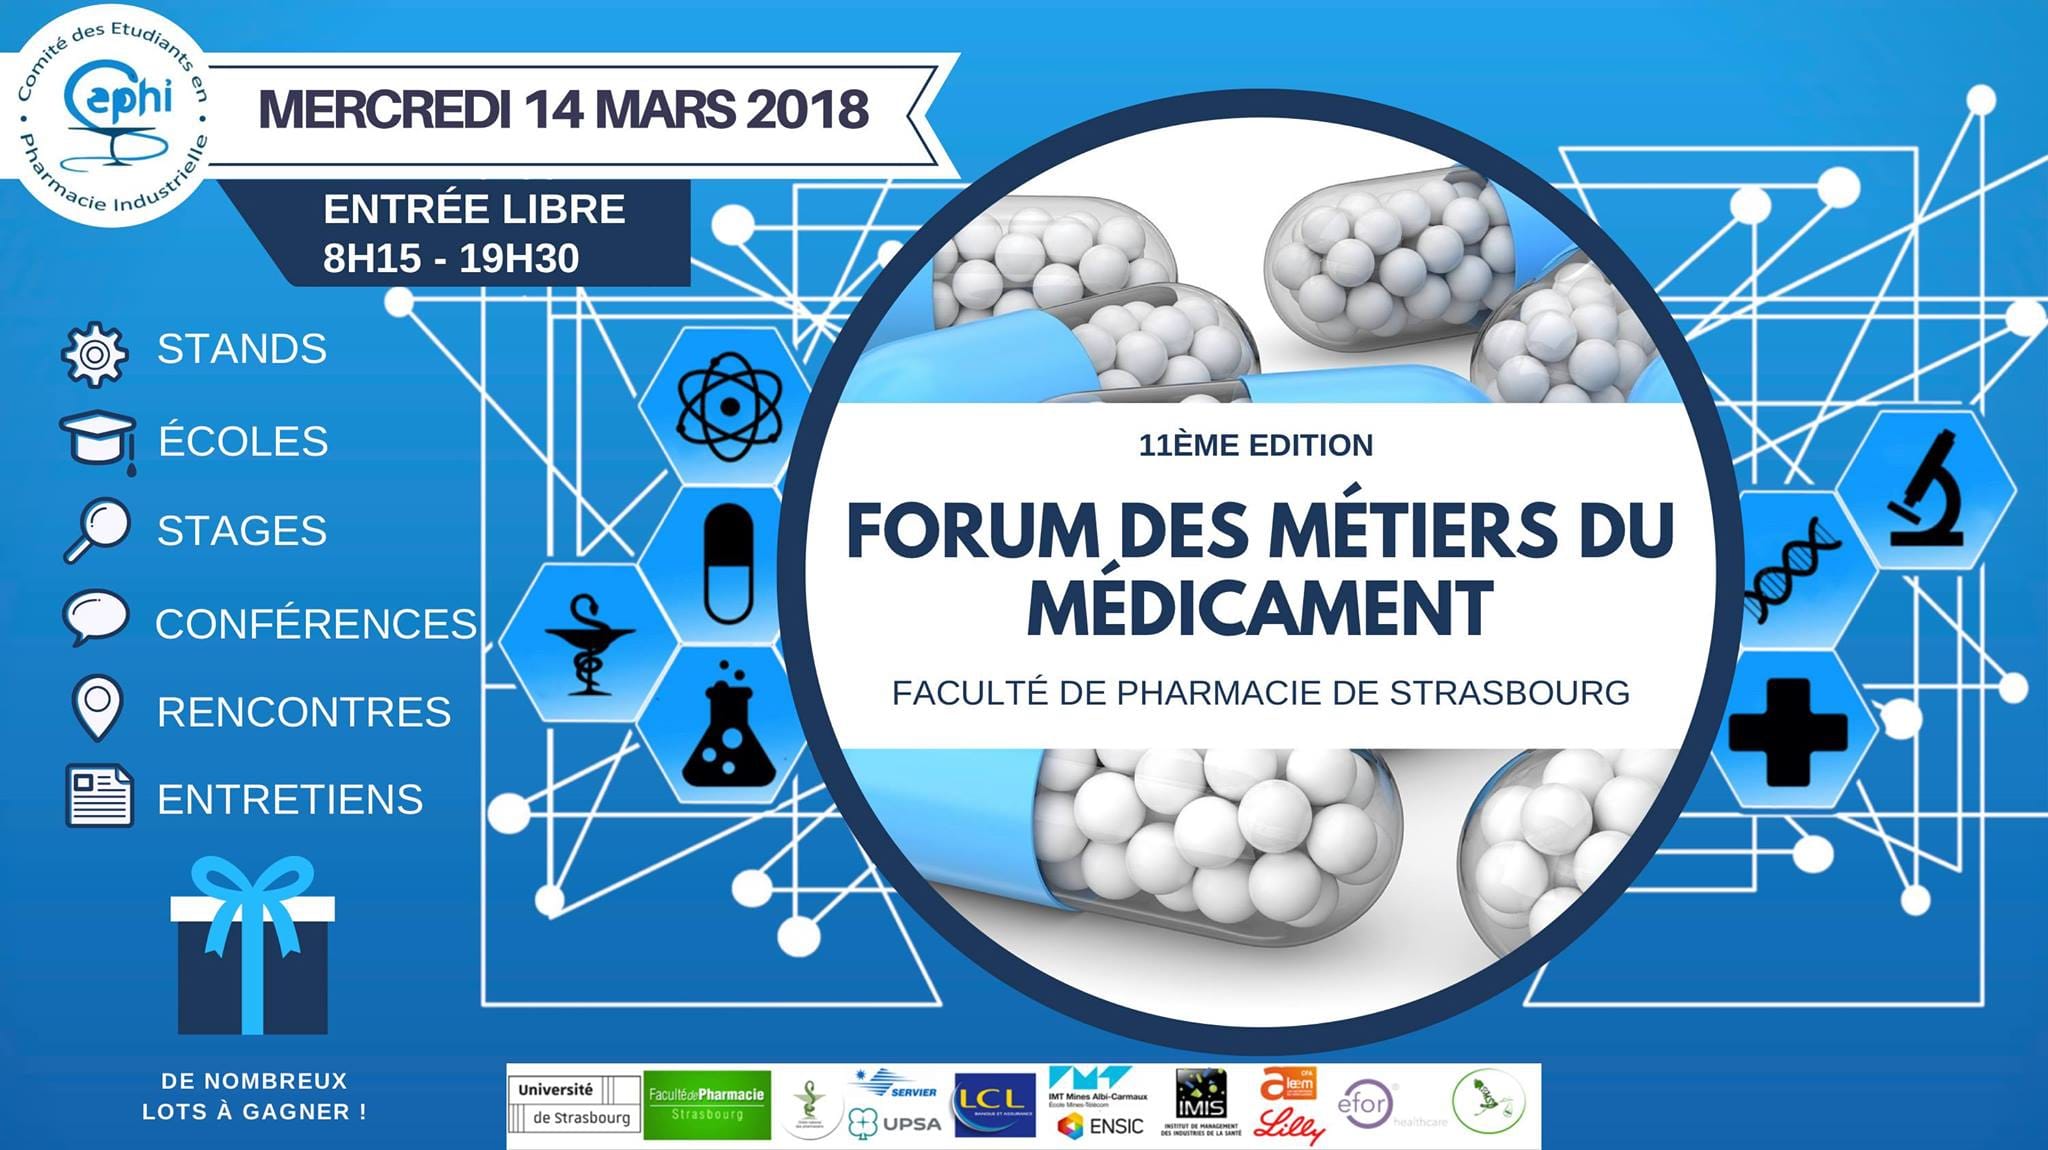 Forum des métiers du médicament – 14 mars 2018 – Faculté de Pharmacie de Strasbourg